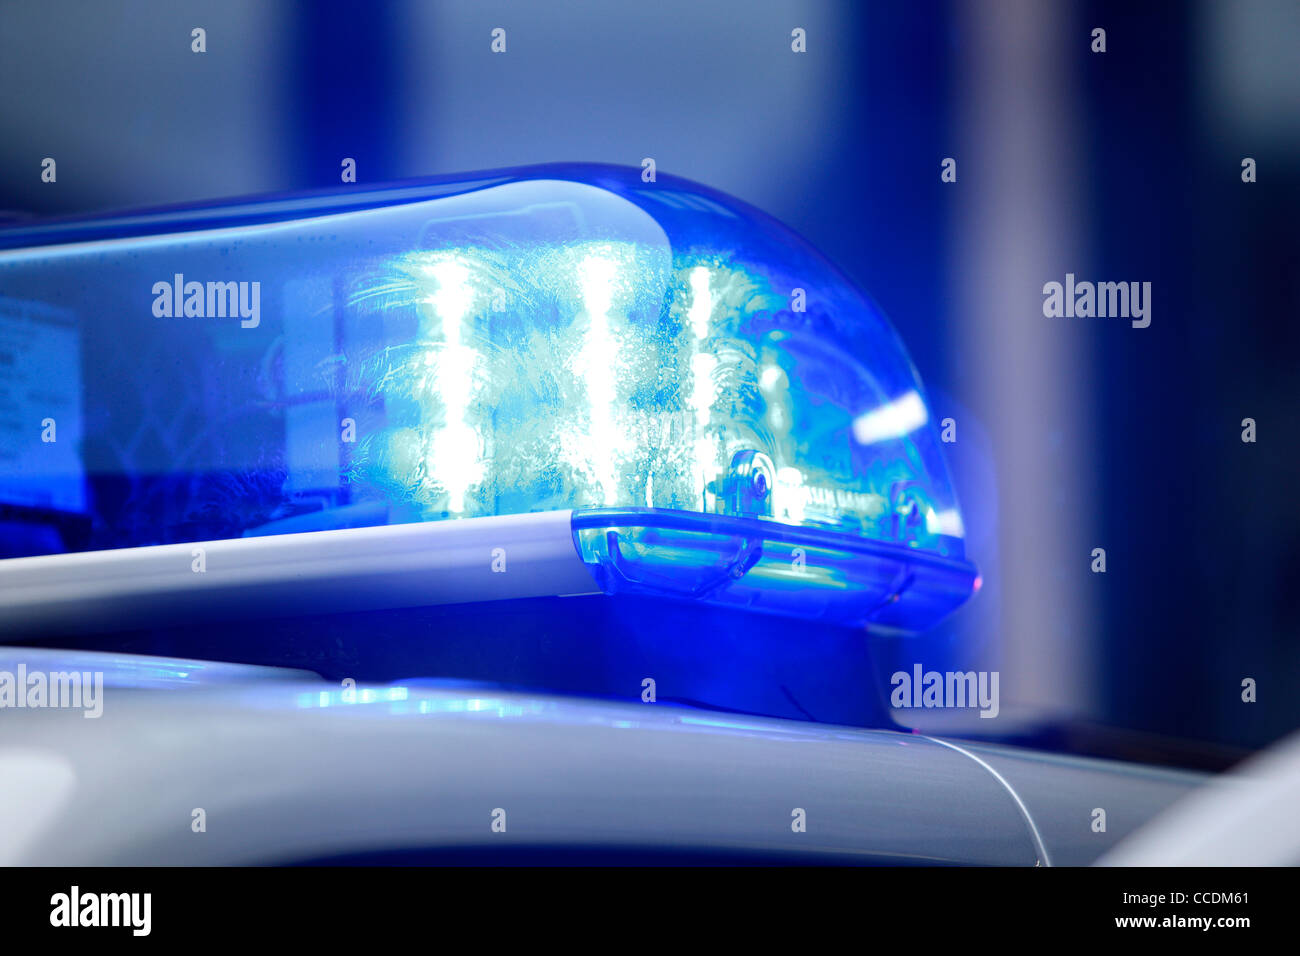 La lumière bleue d'une voiture de police. Banque D'Images